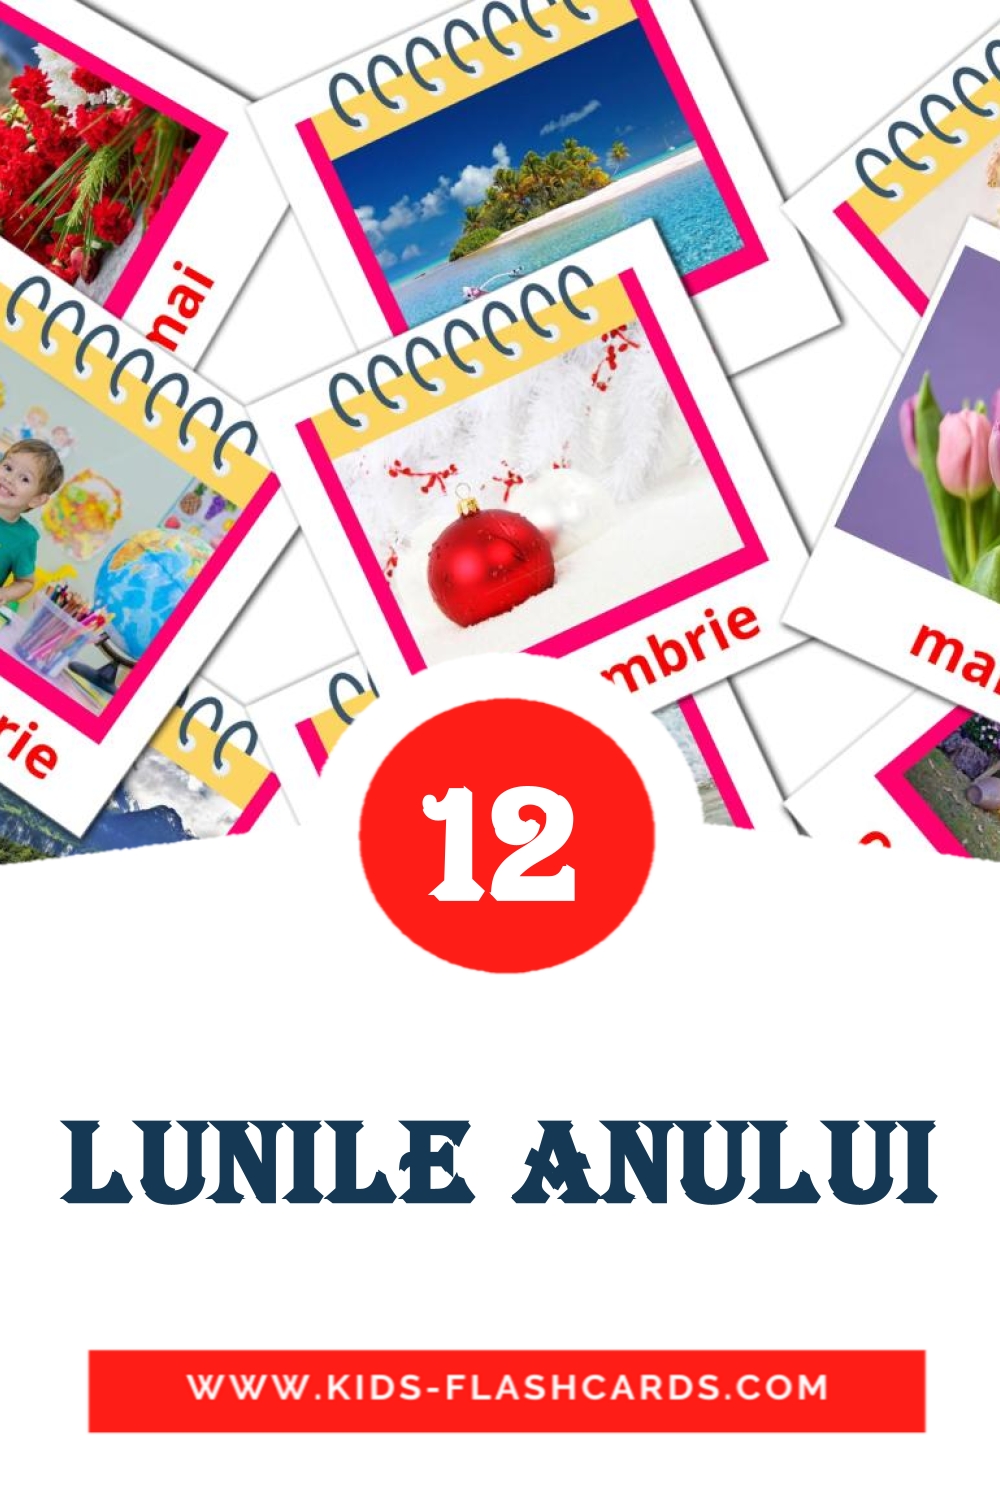 12 cartes illustrées de Lunile anului pour la maternelle en roumain